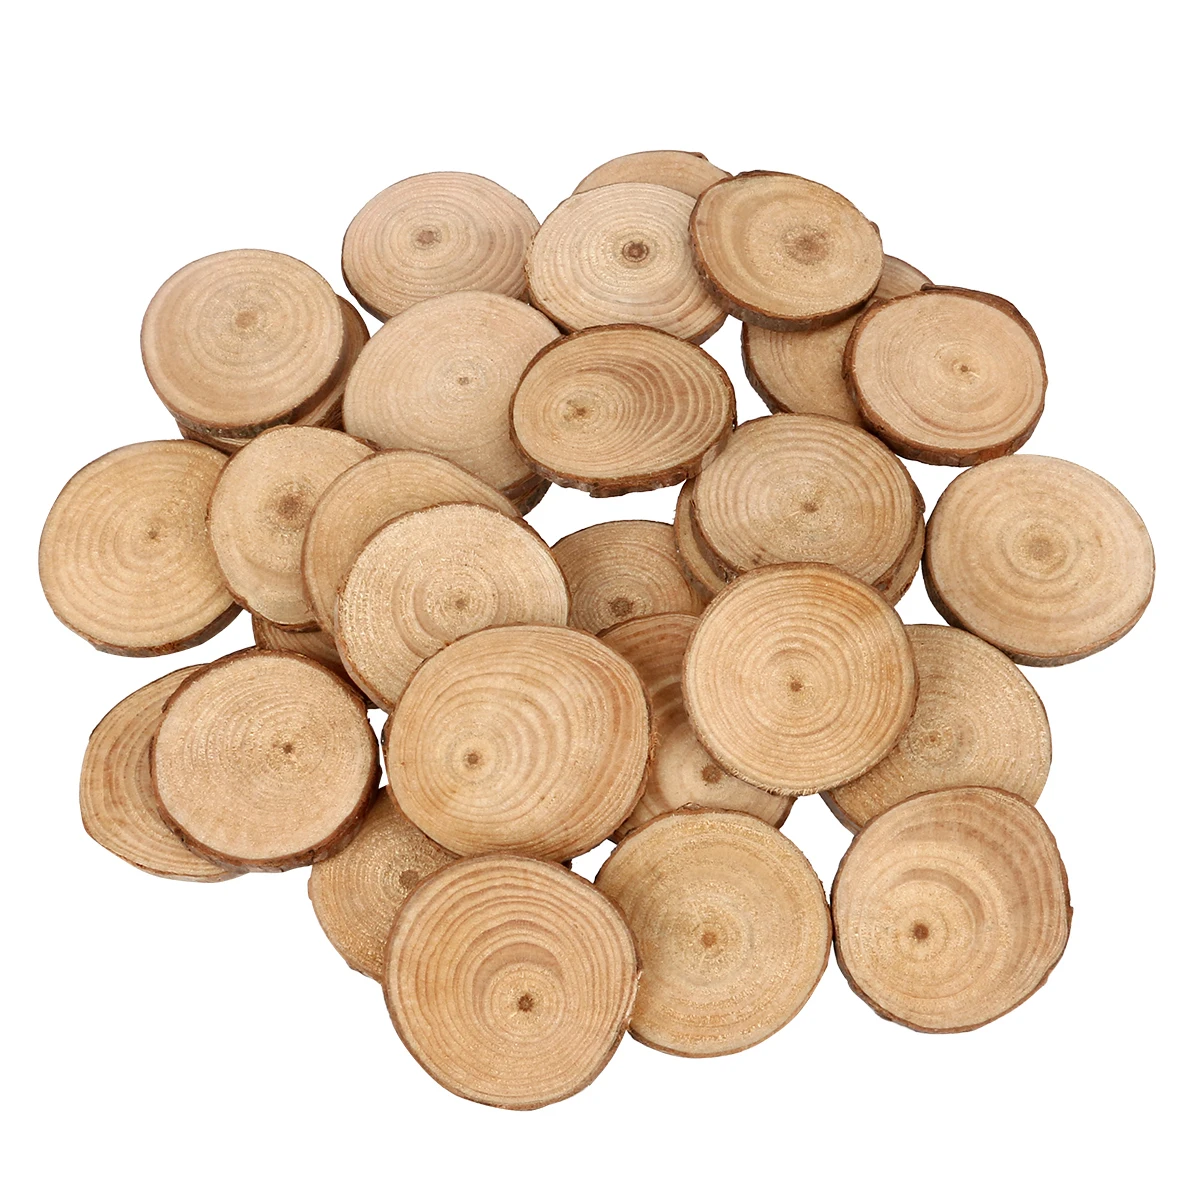 30 шт. 4-5 см необработанные натуральные круглые деревянные пластинки круги с деревом коры деревянные подставки для DIY ремесла украшения для свадебной вечеринки